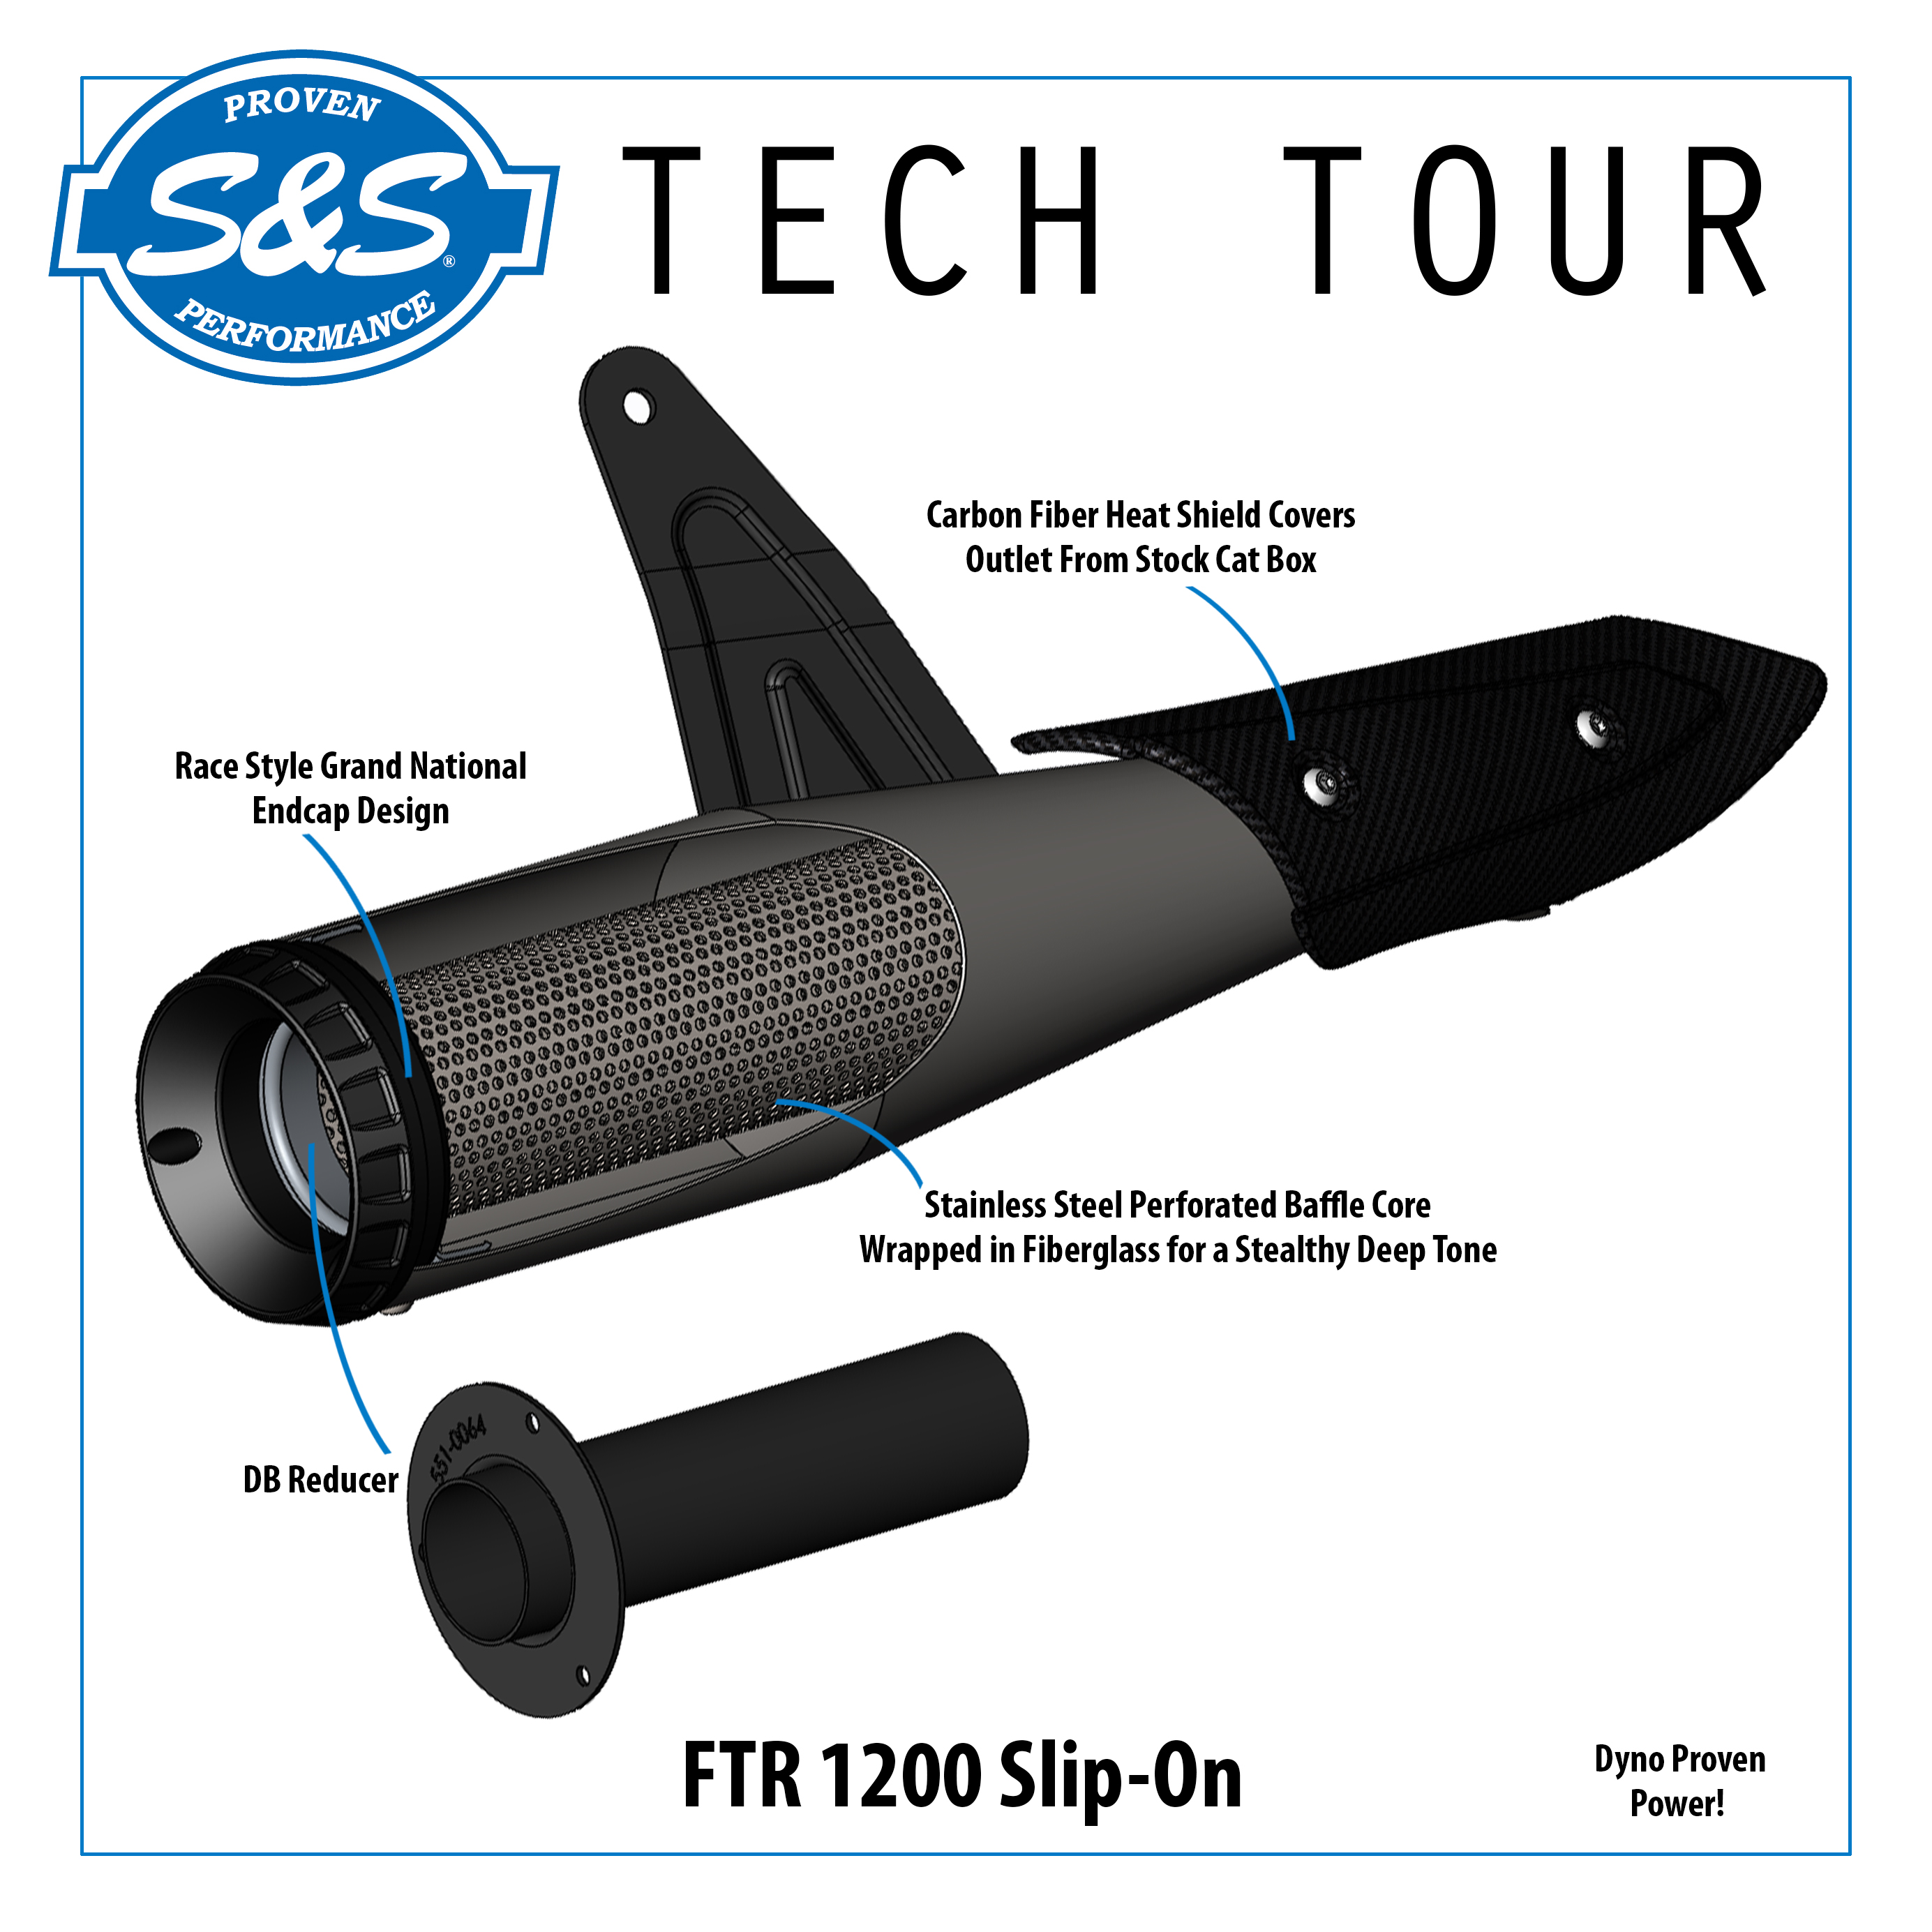 S&S-Tech-Tour-FTR1200-Slip-On